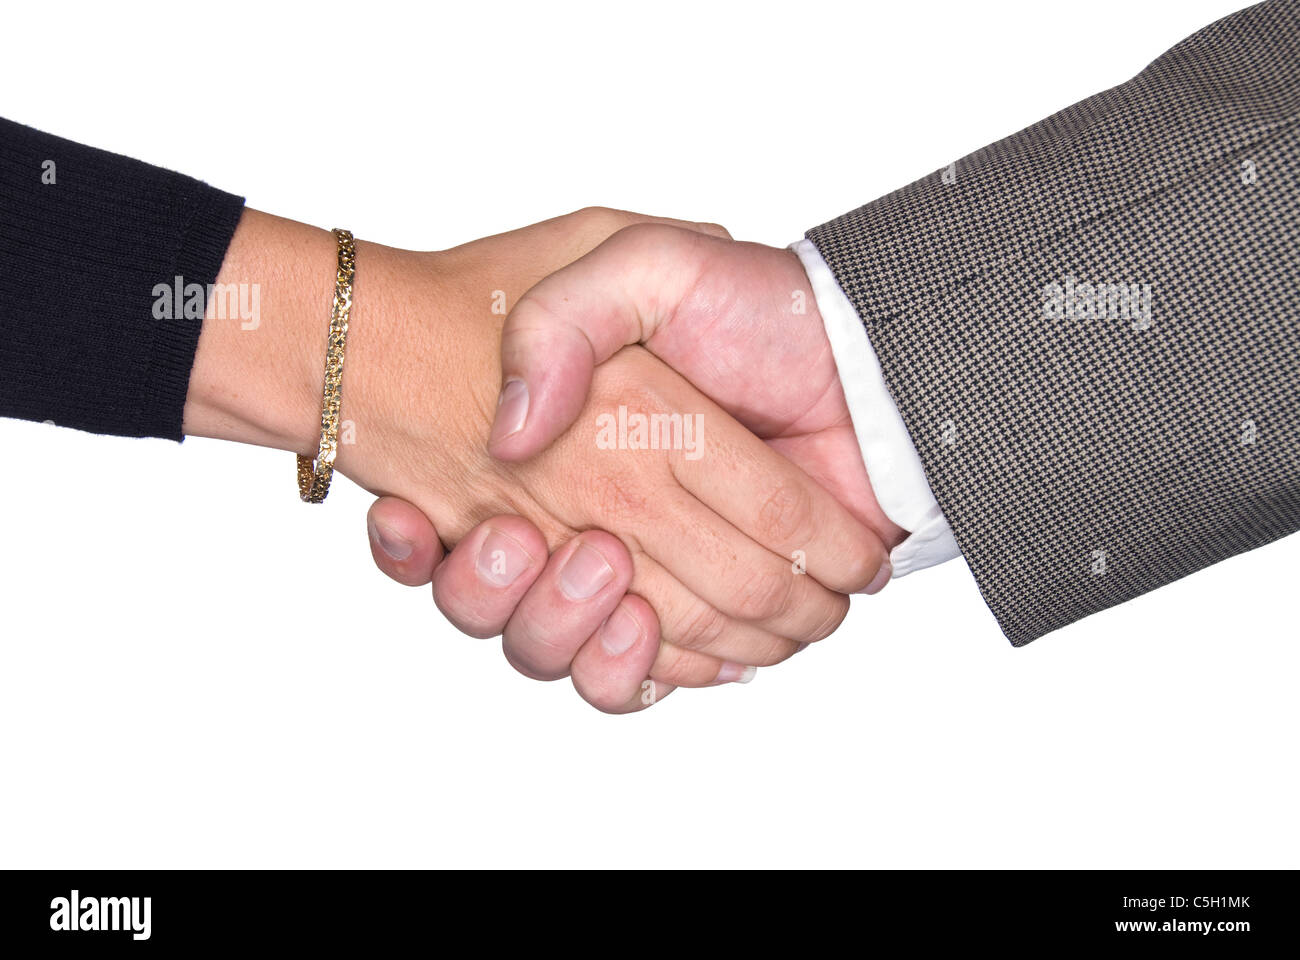 Männliche und weibliche Partner Händeschütteln nach einer Aushandlung eines Vertrages Stockfoto